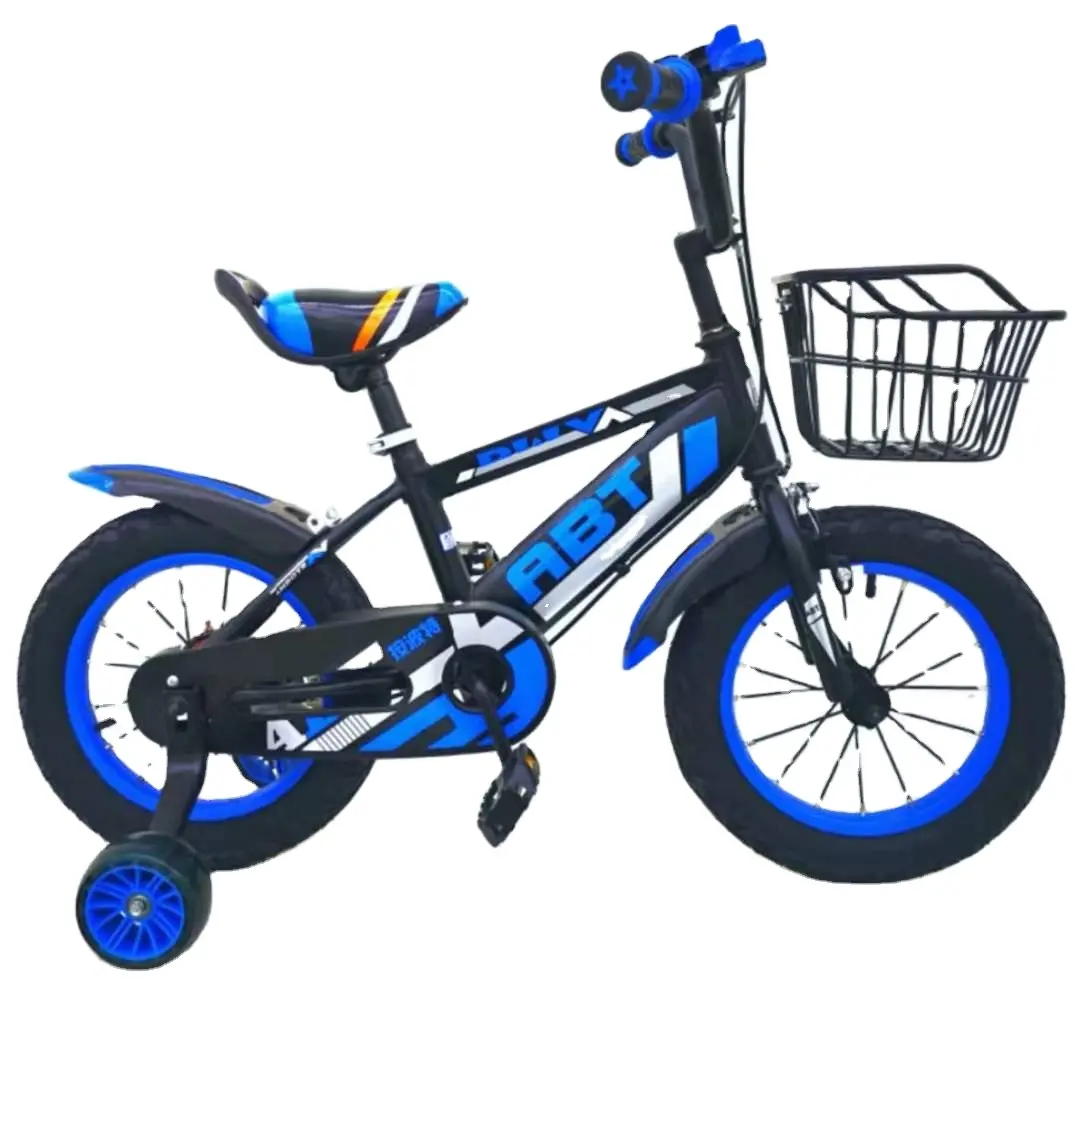 Fabrika doğrudan satış ucuz fiyat erkek ve kız bisiklet 12 14 16 18 20 inç çocuk dağ bisikleti çocuk bisikleti